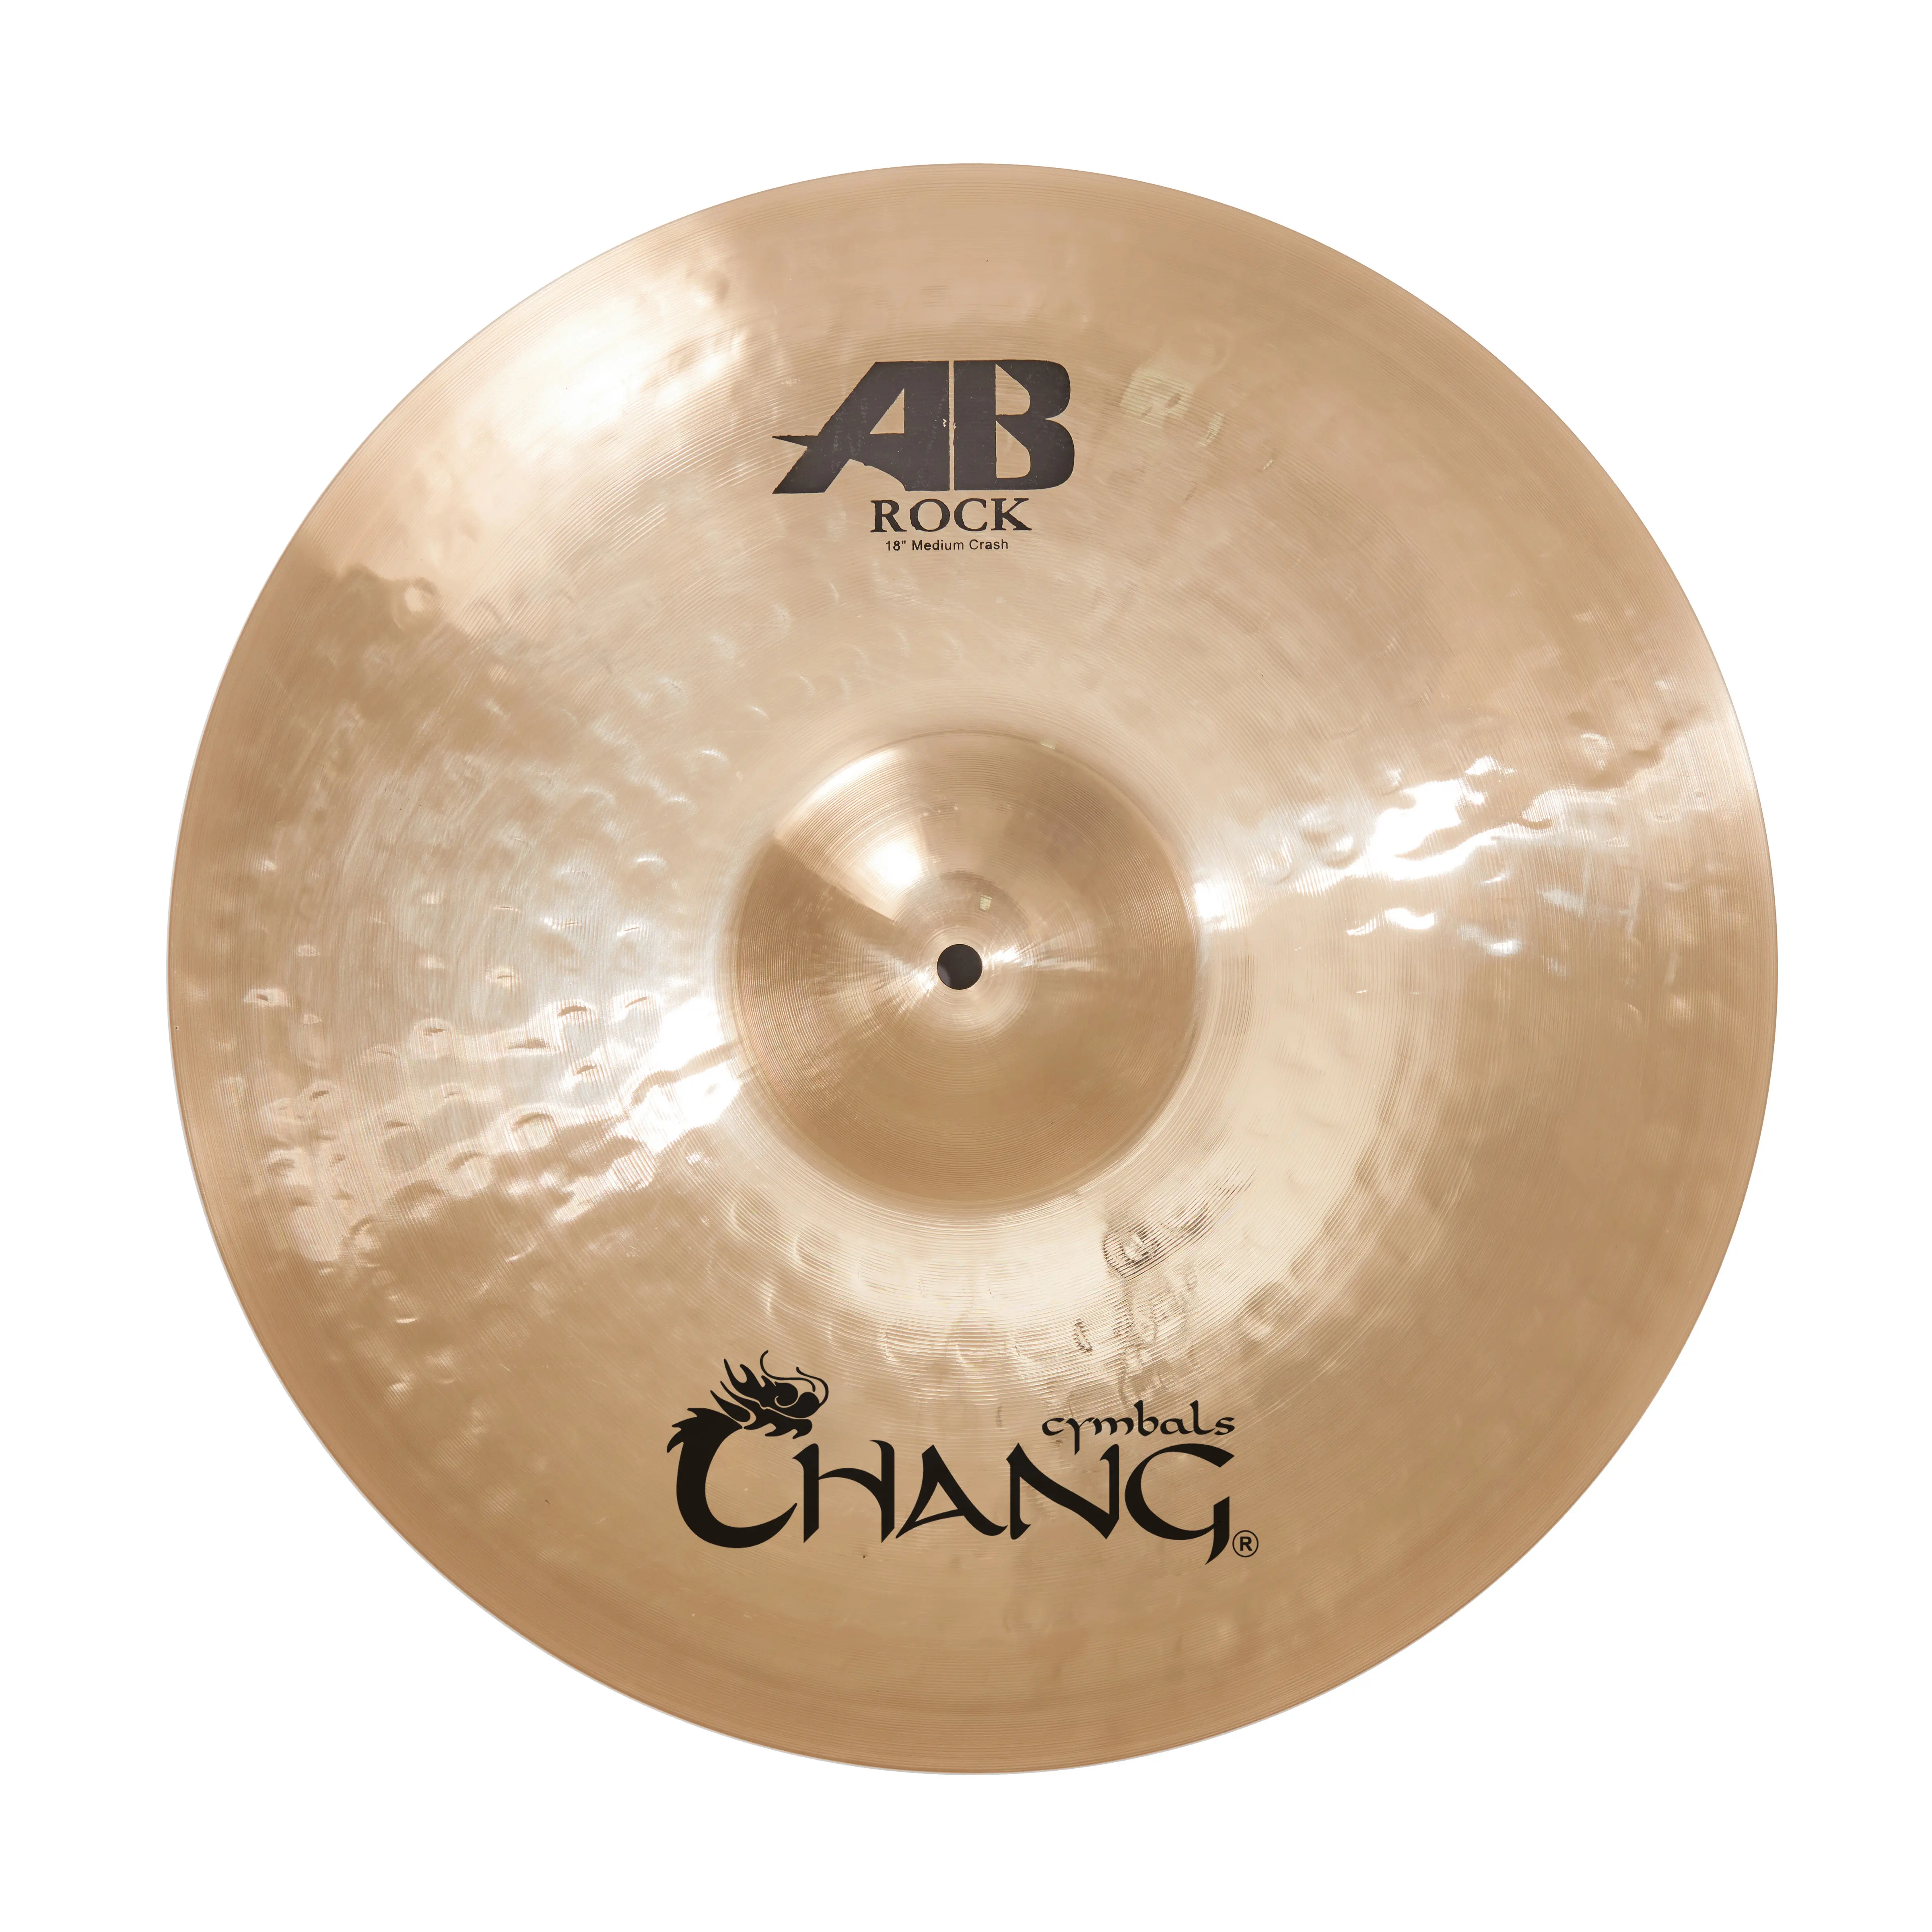 Hohe B20 100% Hand-Made Chang Becken -- AB Rock serie für Professionelle heavy Rock spielen